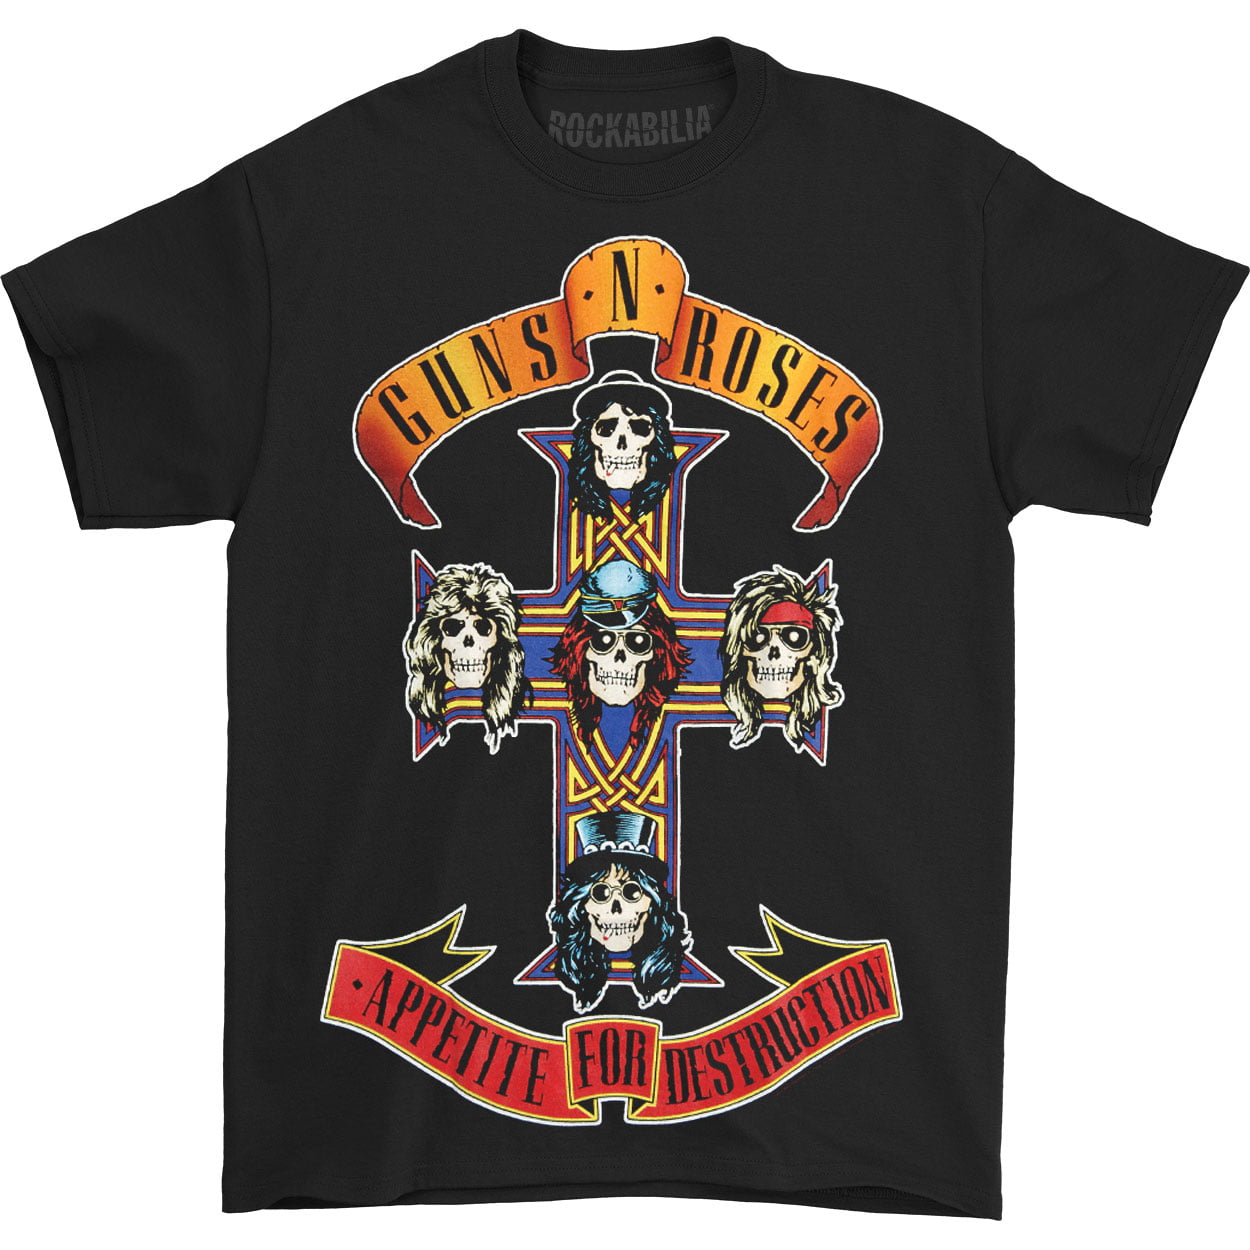 Guns N Roses 2021 Tour Shirt - Guns N' Roses Announce Rescheduled 2021 ...